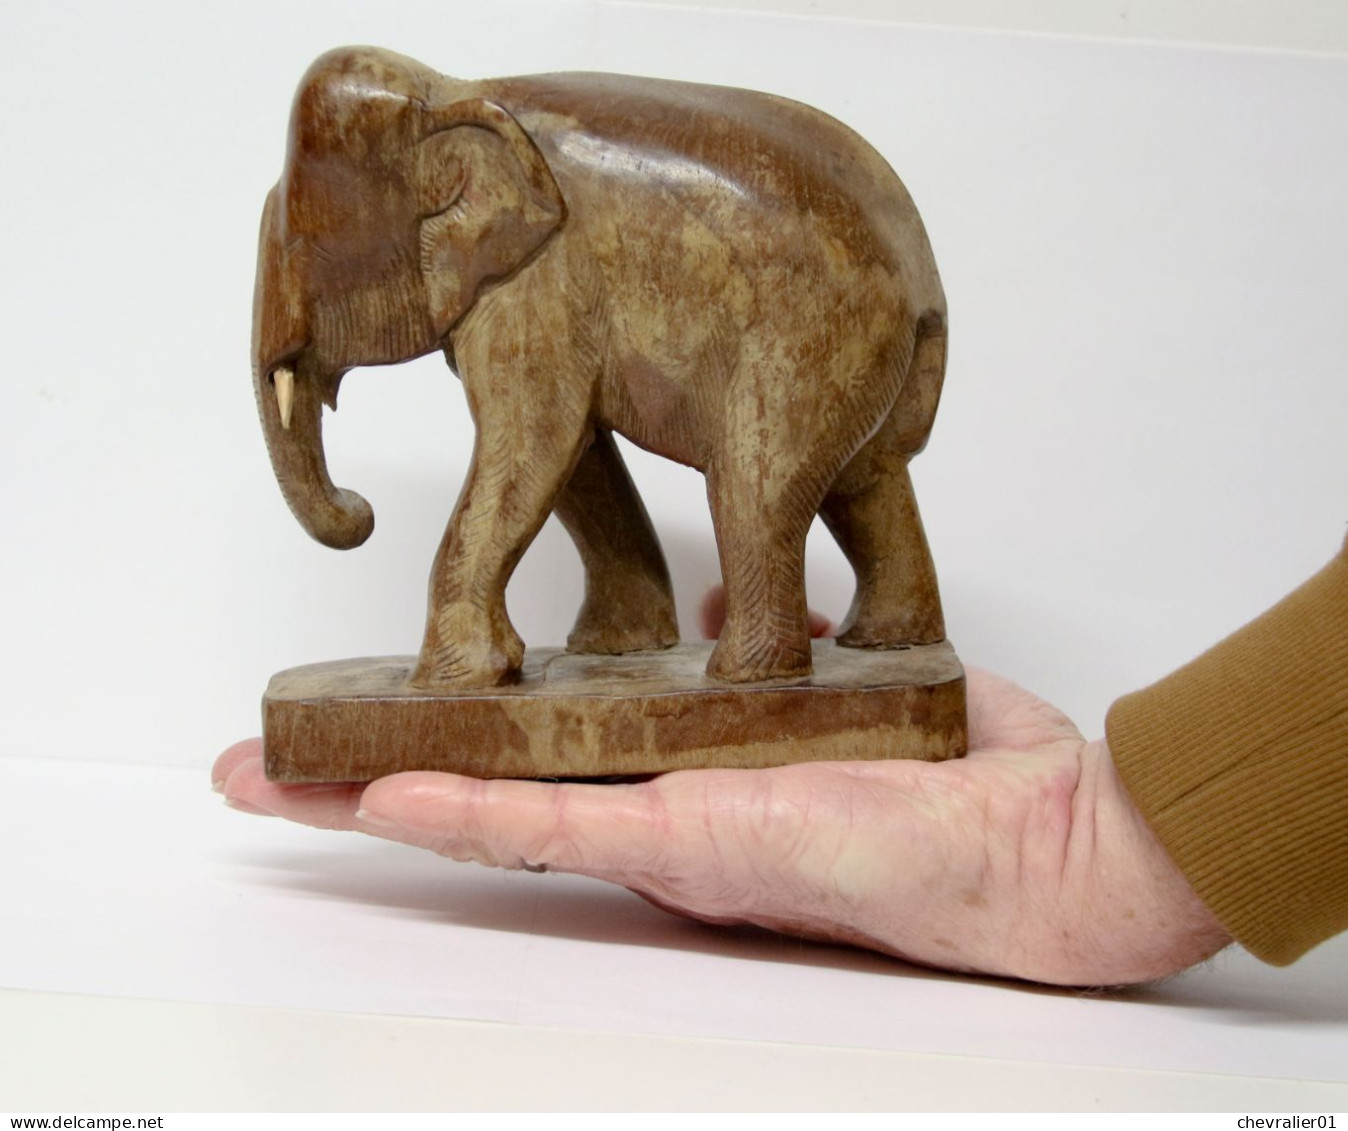 Art-antiquité_sculpture en bois_Statuette d'éléphant asiatique